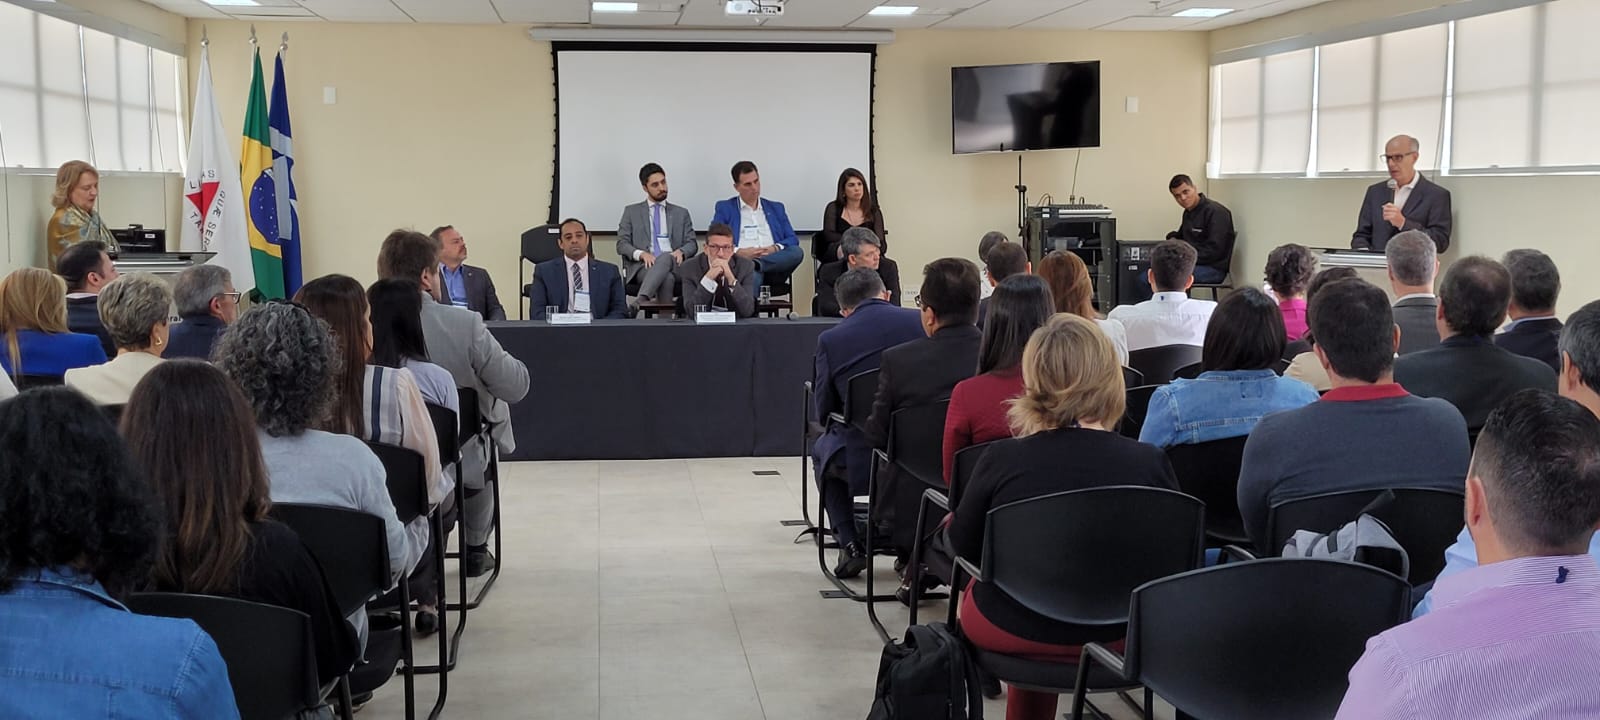 Com participação da Jucemg, acontece em BH encontro nacional para debater melhorias no registro e legalização de empresas no Brasil